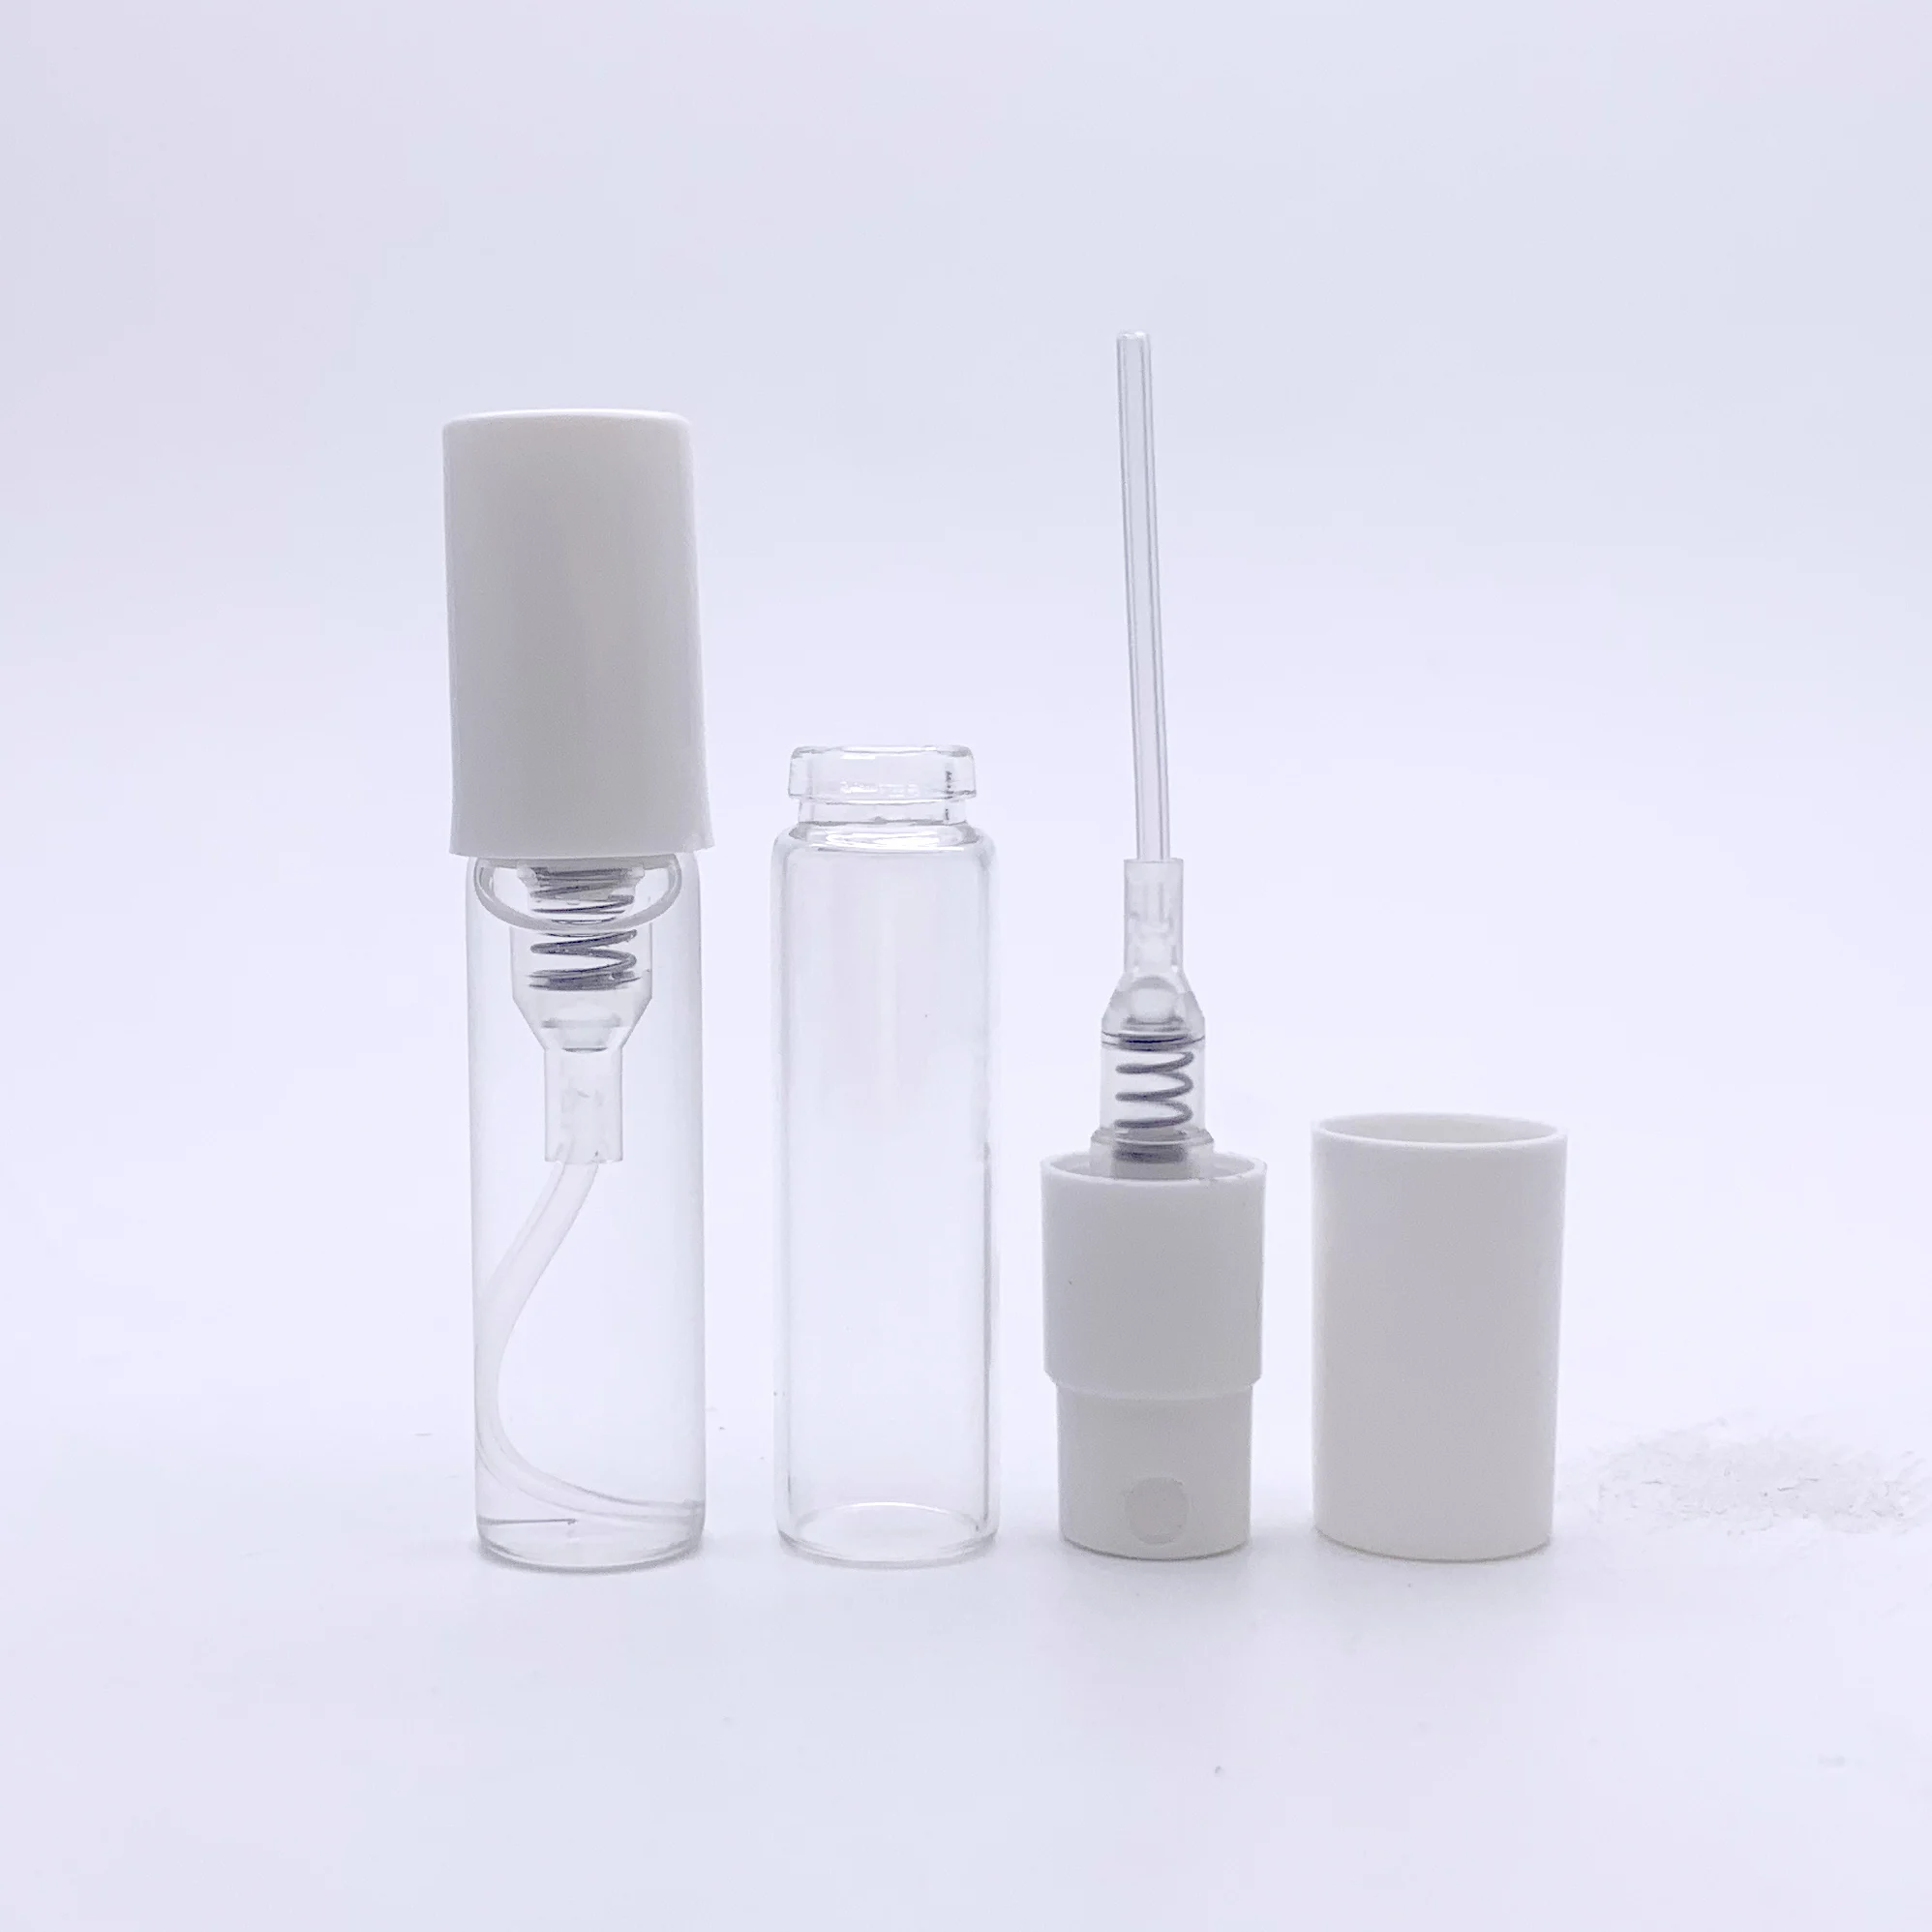 2ml Glass Spray Perfume Tester Bottles In Cheap - Buy Amber Glass ...